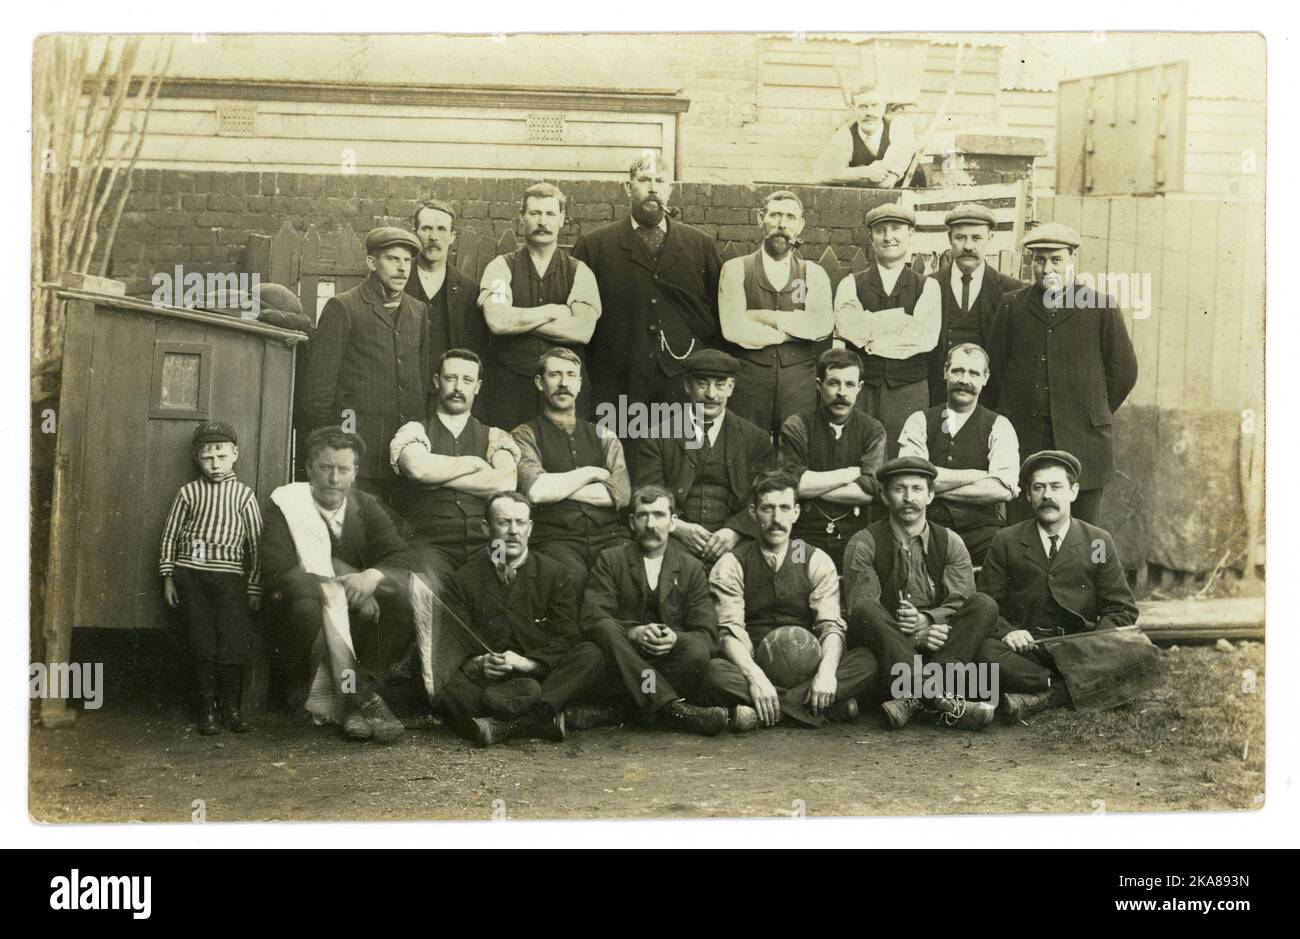 Original début des années 1920, équipe de football amateur de rue, beaucoup de personnages, voisins, arbitres agitant des drapeaux, grand chap à l'arrière peut-être Manager, dans un cadre urbain, Royaume-Uni Banque D'Images